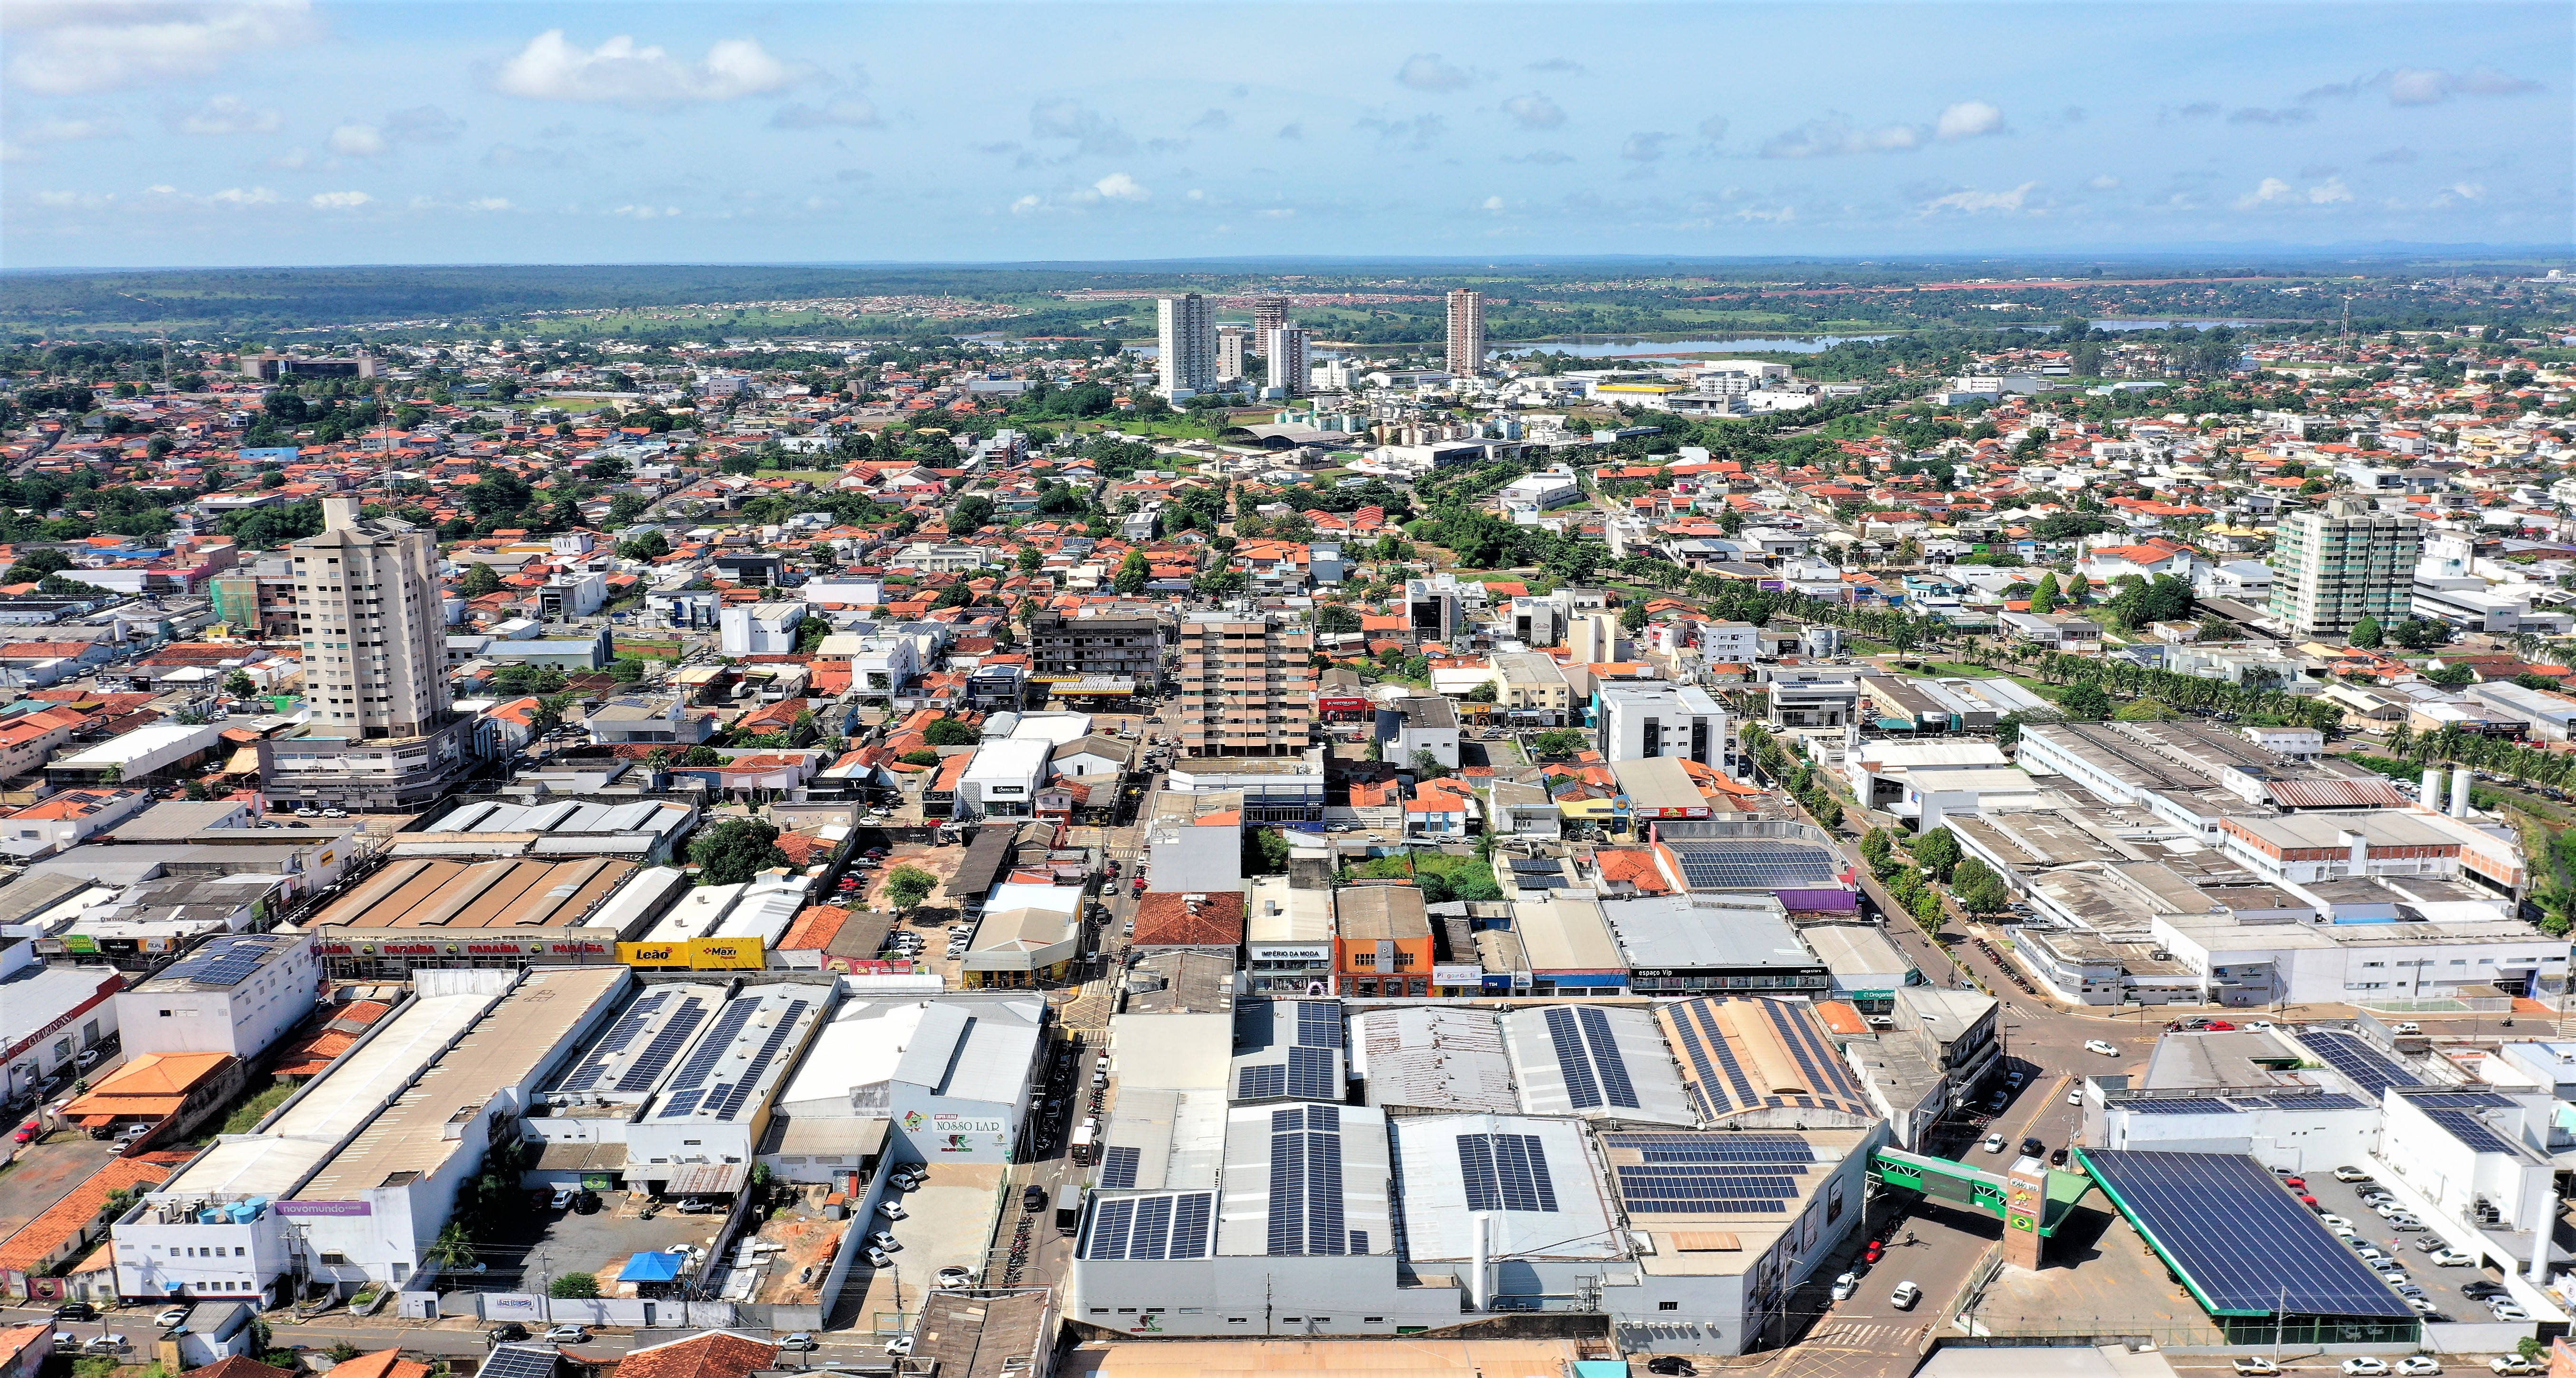 O minidocumentário destaca as áreas nas quais Araguaína assume uma posição de referência econômica e social, como logística, agropecuária, comércio, saúde, educação, turismo, sustentabilidade e gestão pública (Foto: Marcos Sandes/Secom Araguaína)